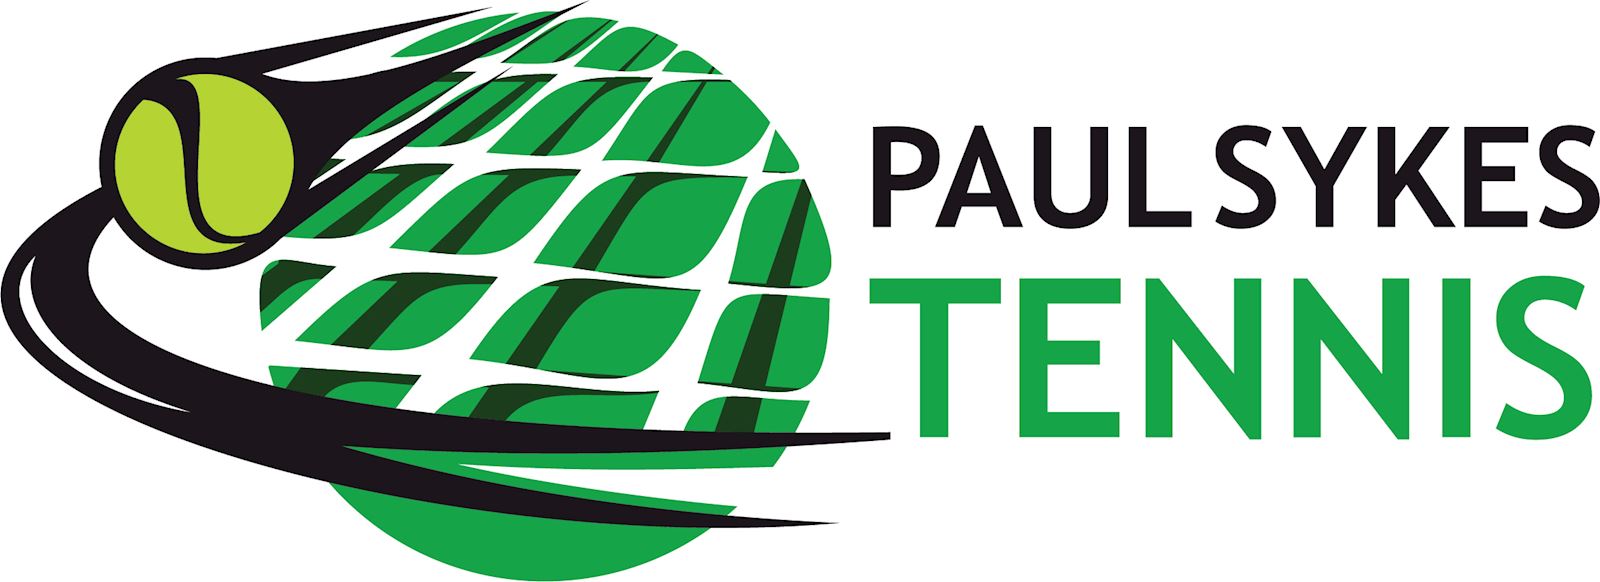 Paul Sykes Tennis logo